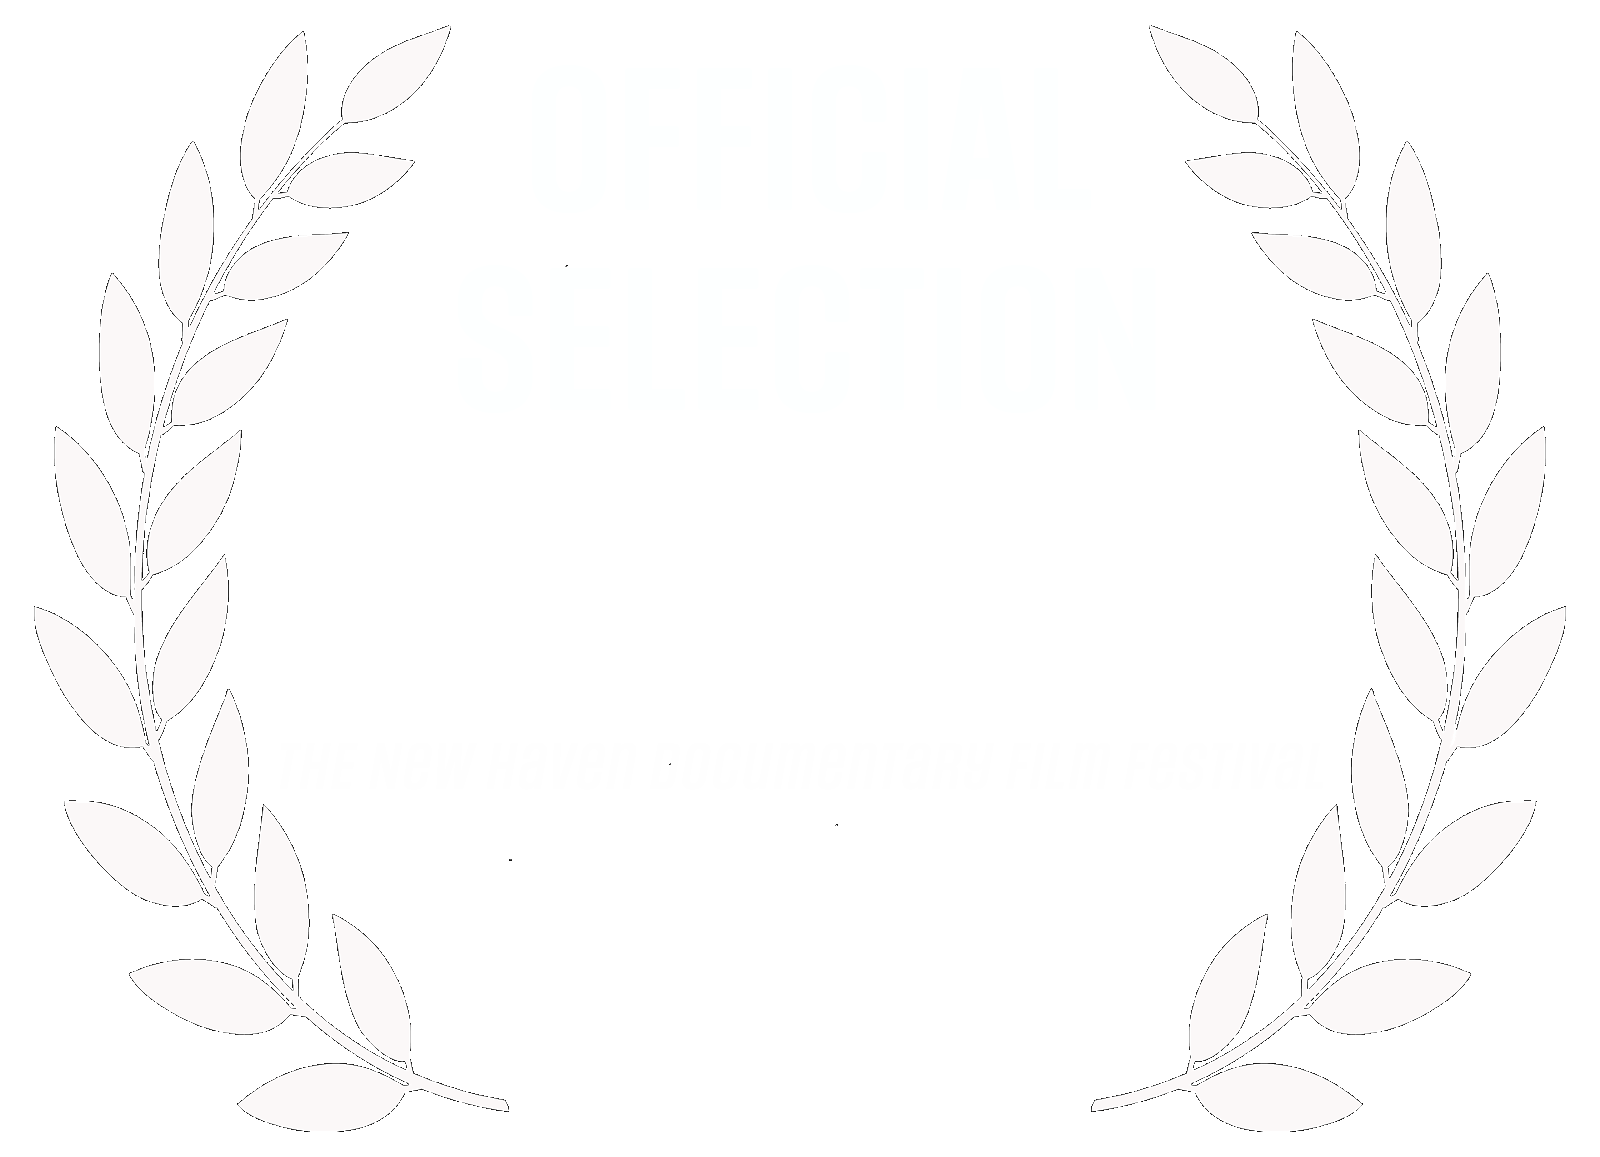  New Haven Documentary Film Festival 